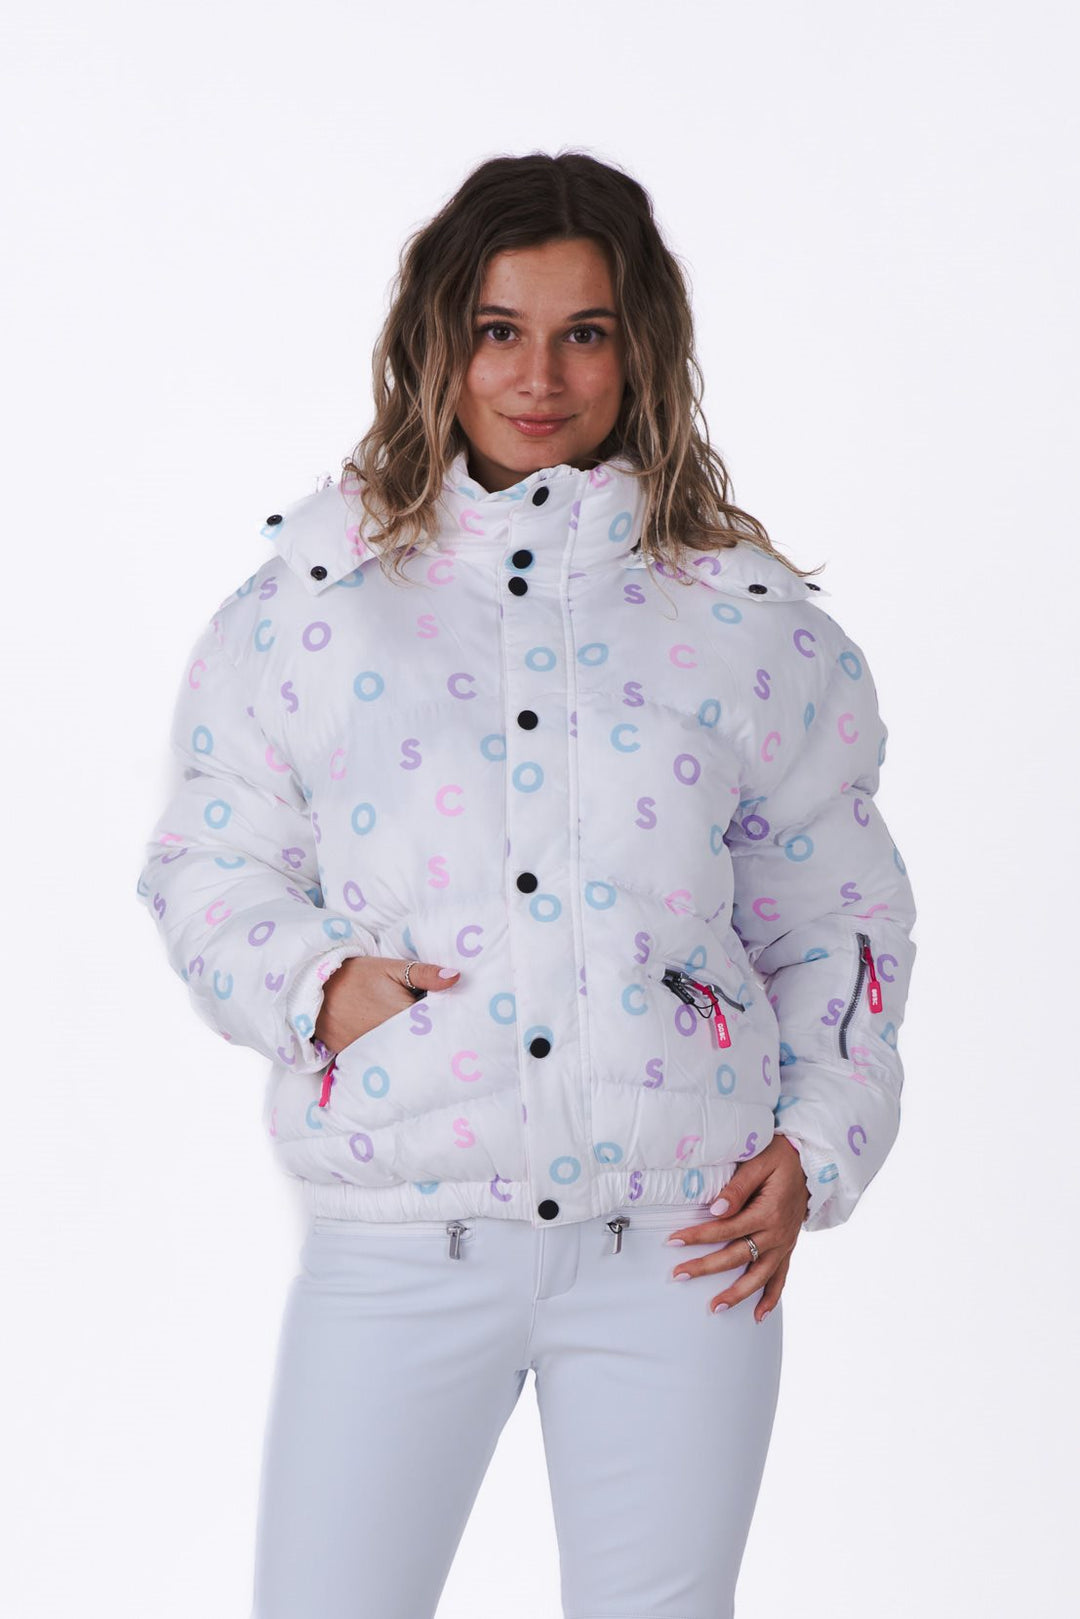 Mint & Pink Ladies Ski Jacket - OOSC Clothing